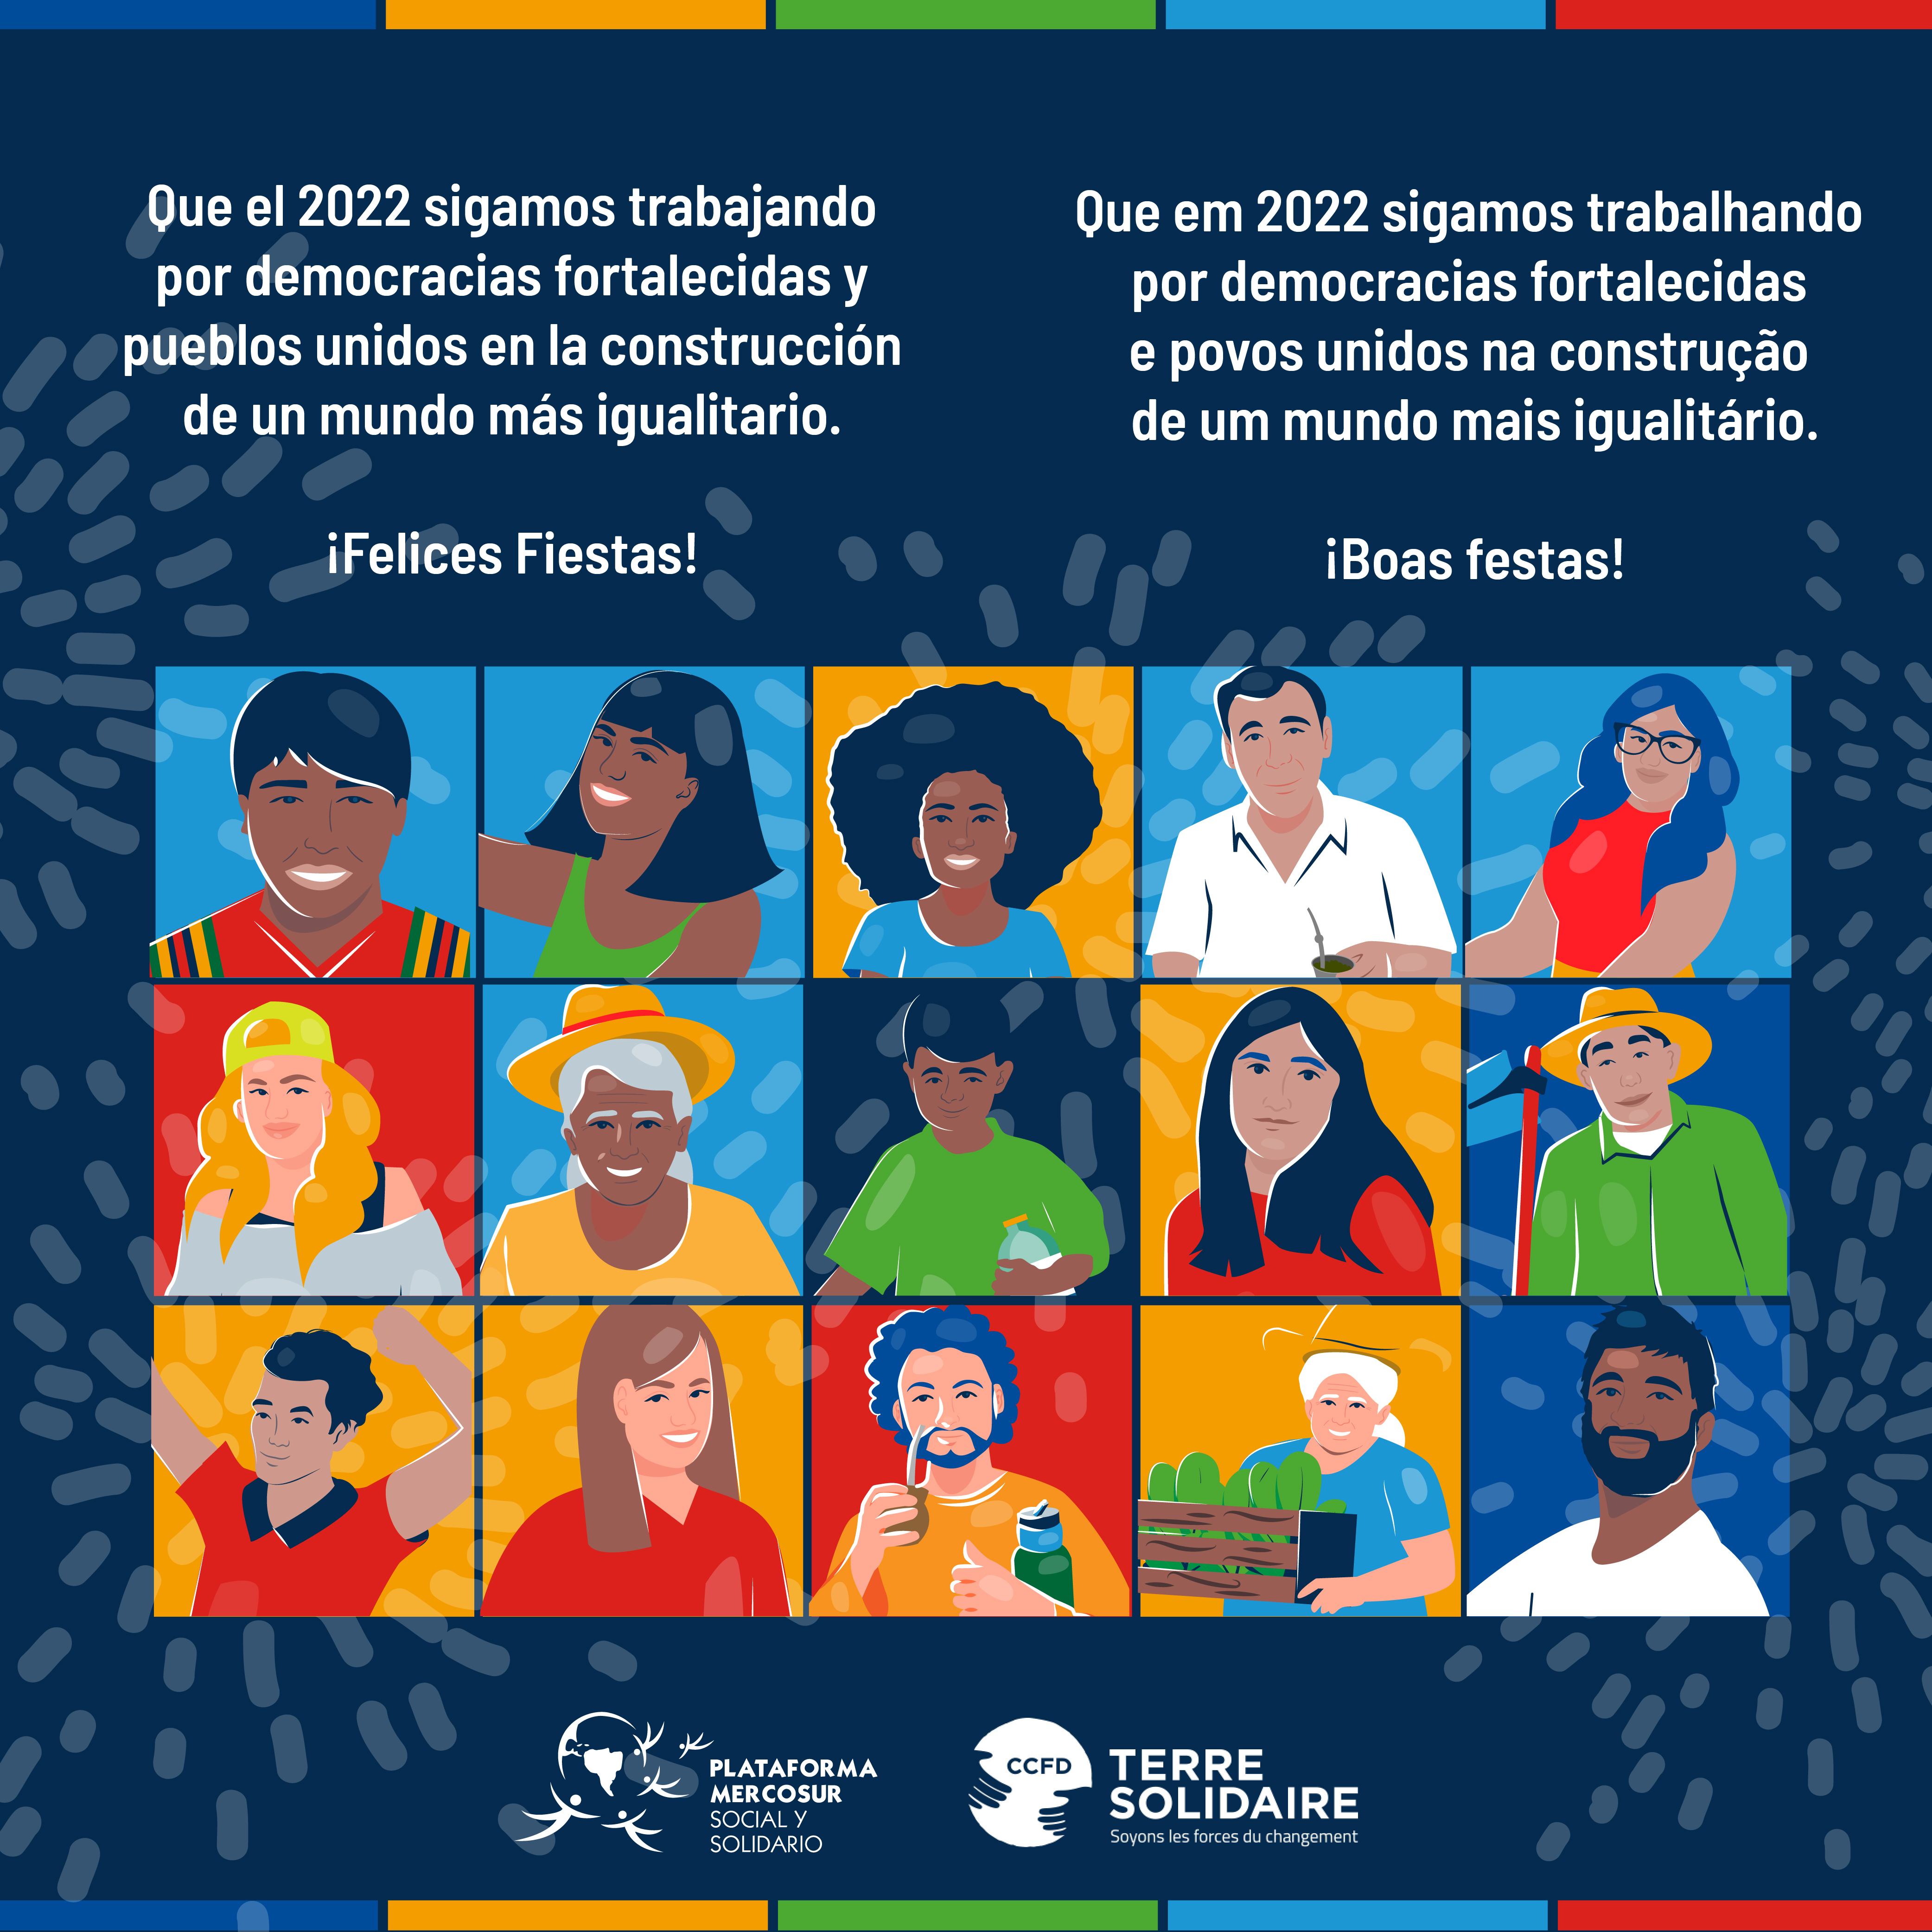 Desde la Plataforma Mercosur Social y Solidario les deseamos ¡Felices Fiestas!